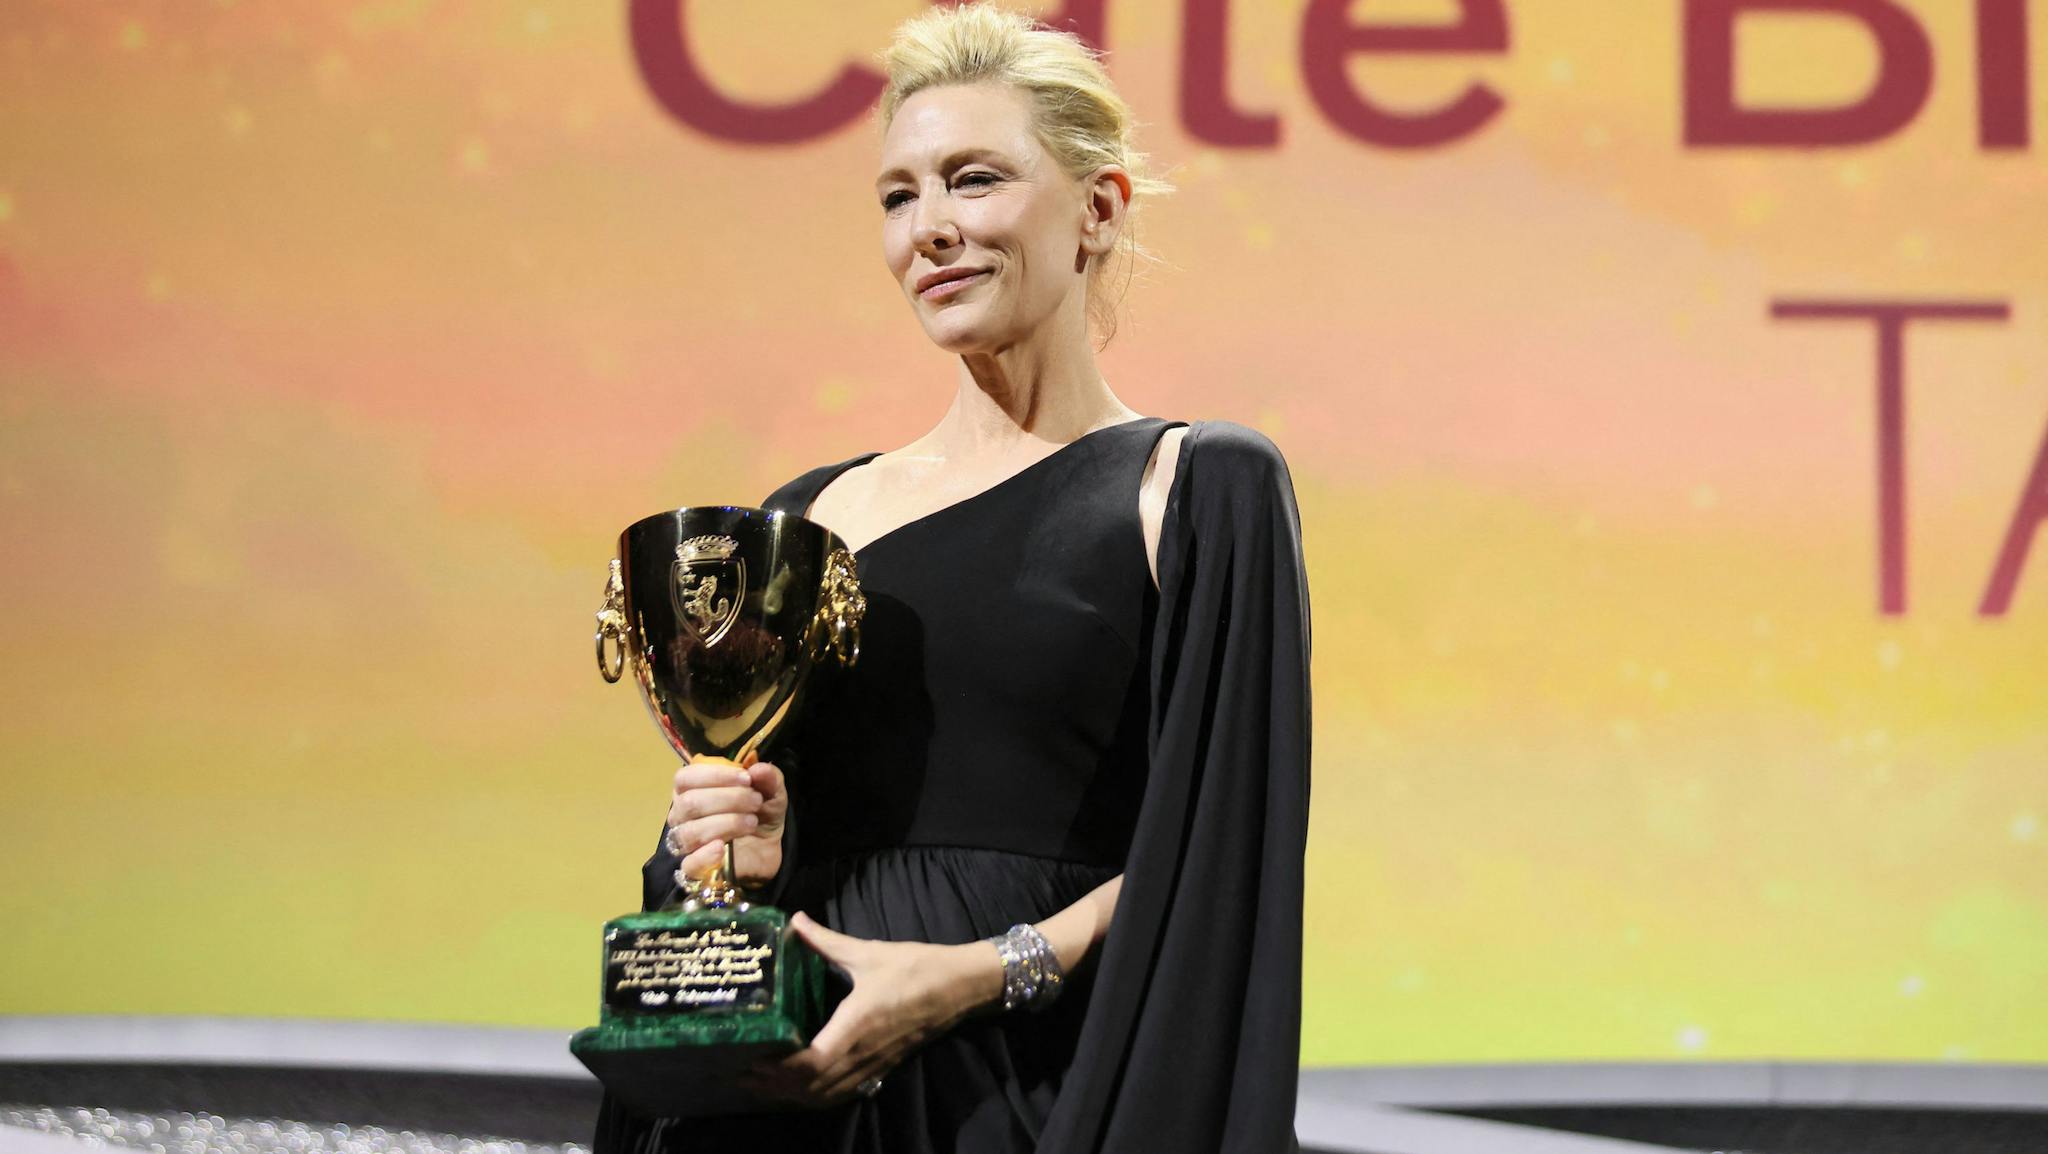 La actriz Cate Blanchett recoge la Copa Volpi del Festival de Venecia 2022 por su interpretación en 'Tár'